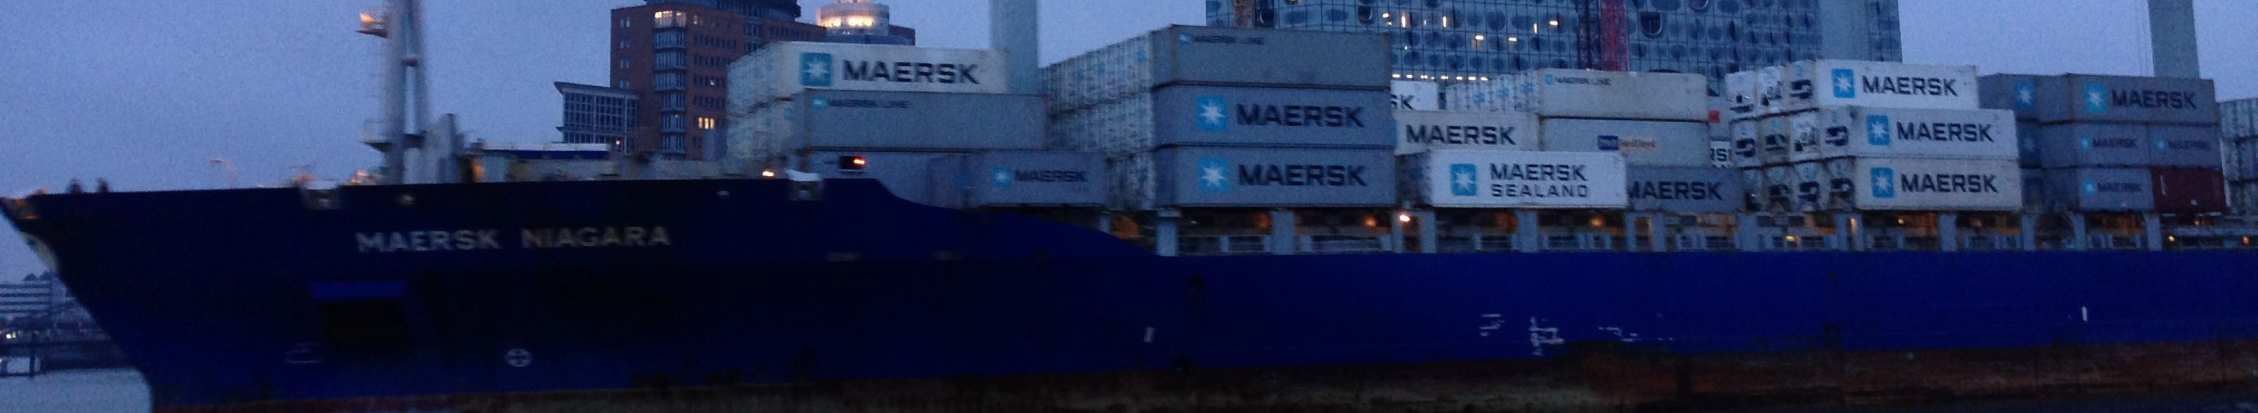 Containerbrückenfahrers im Hamburger Hafen 33